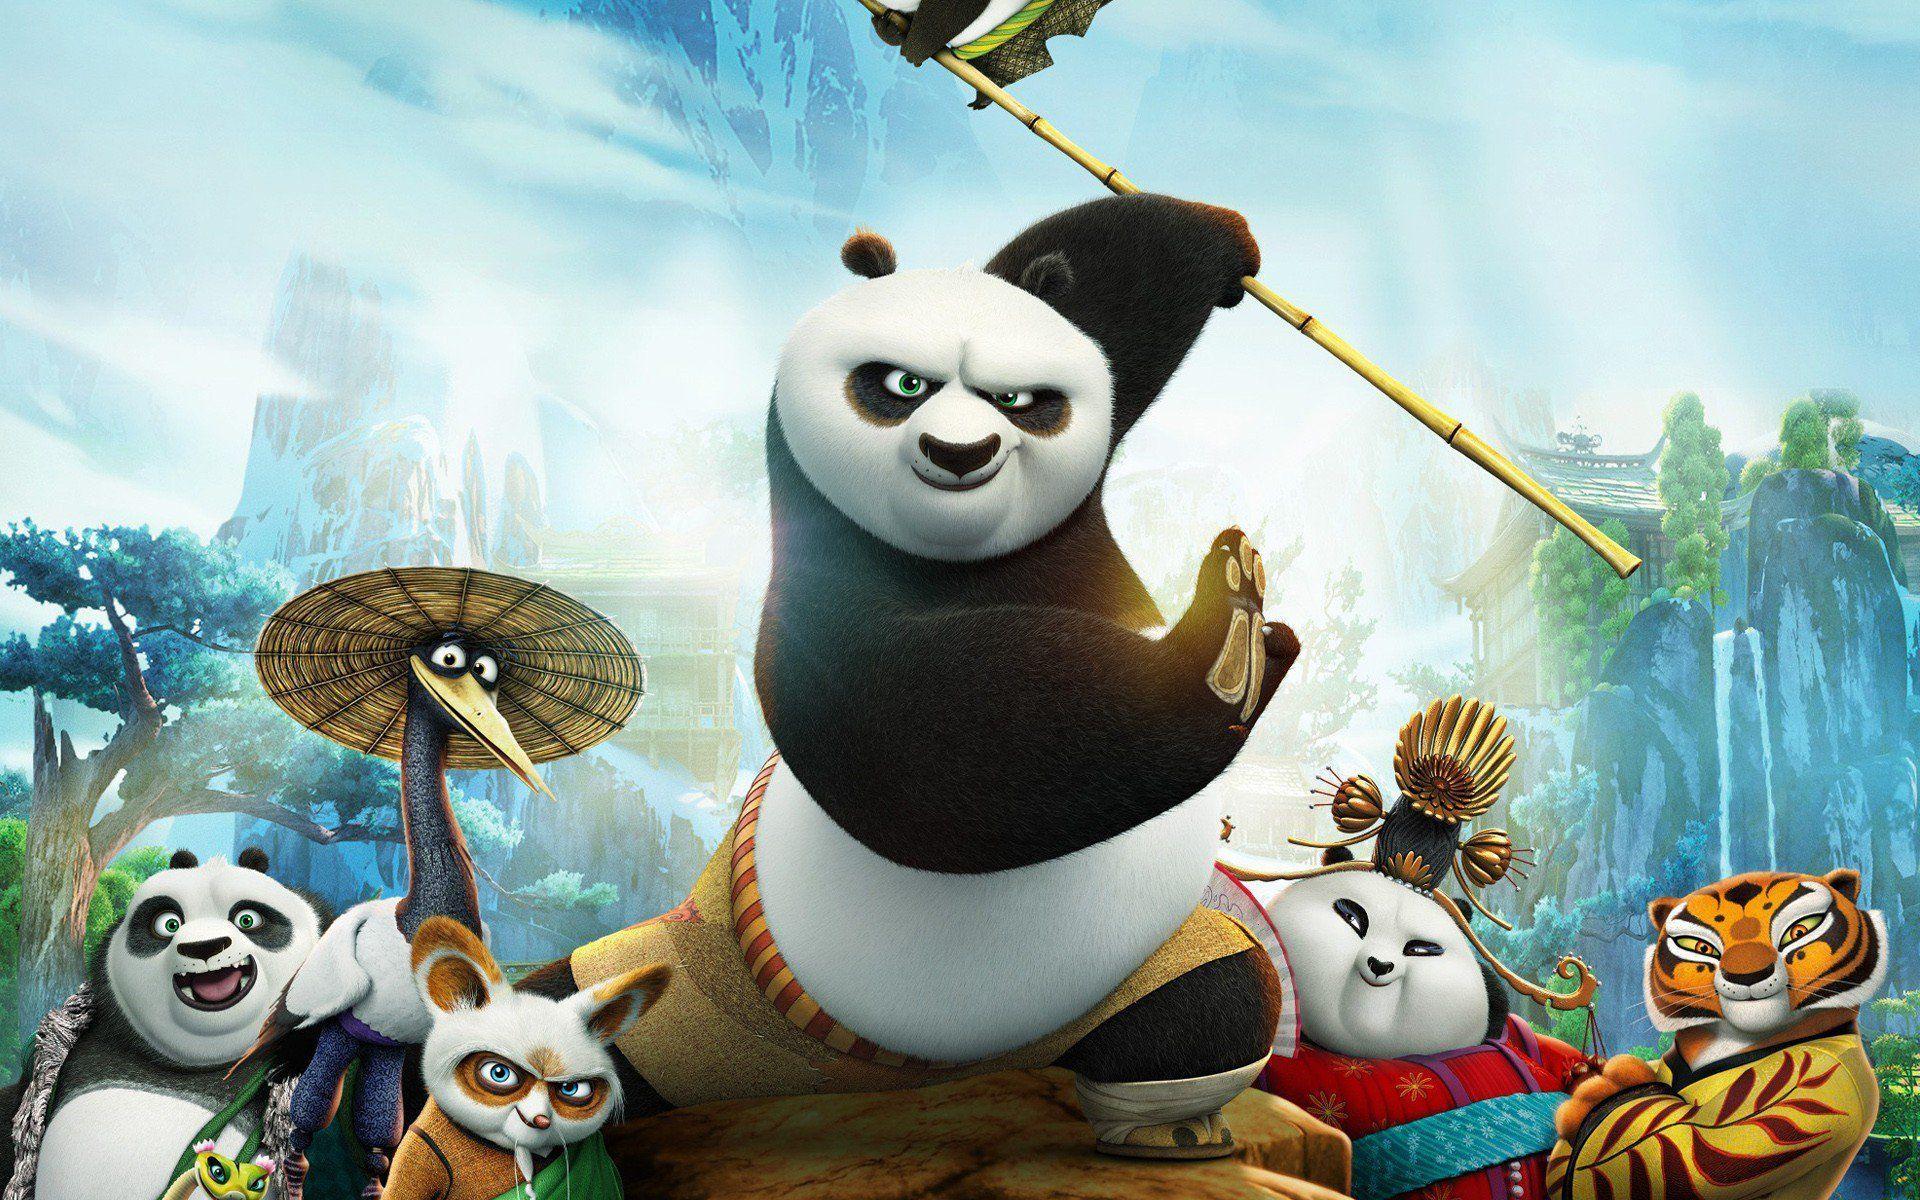 kung fu panda 3 free streaming